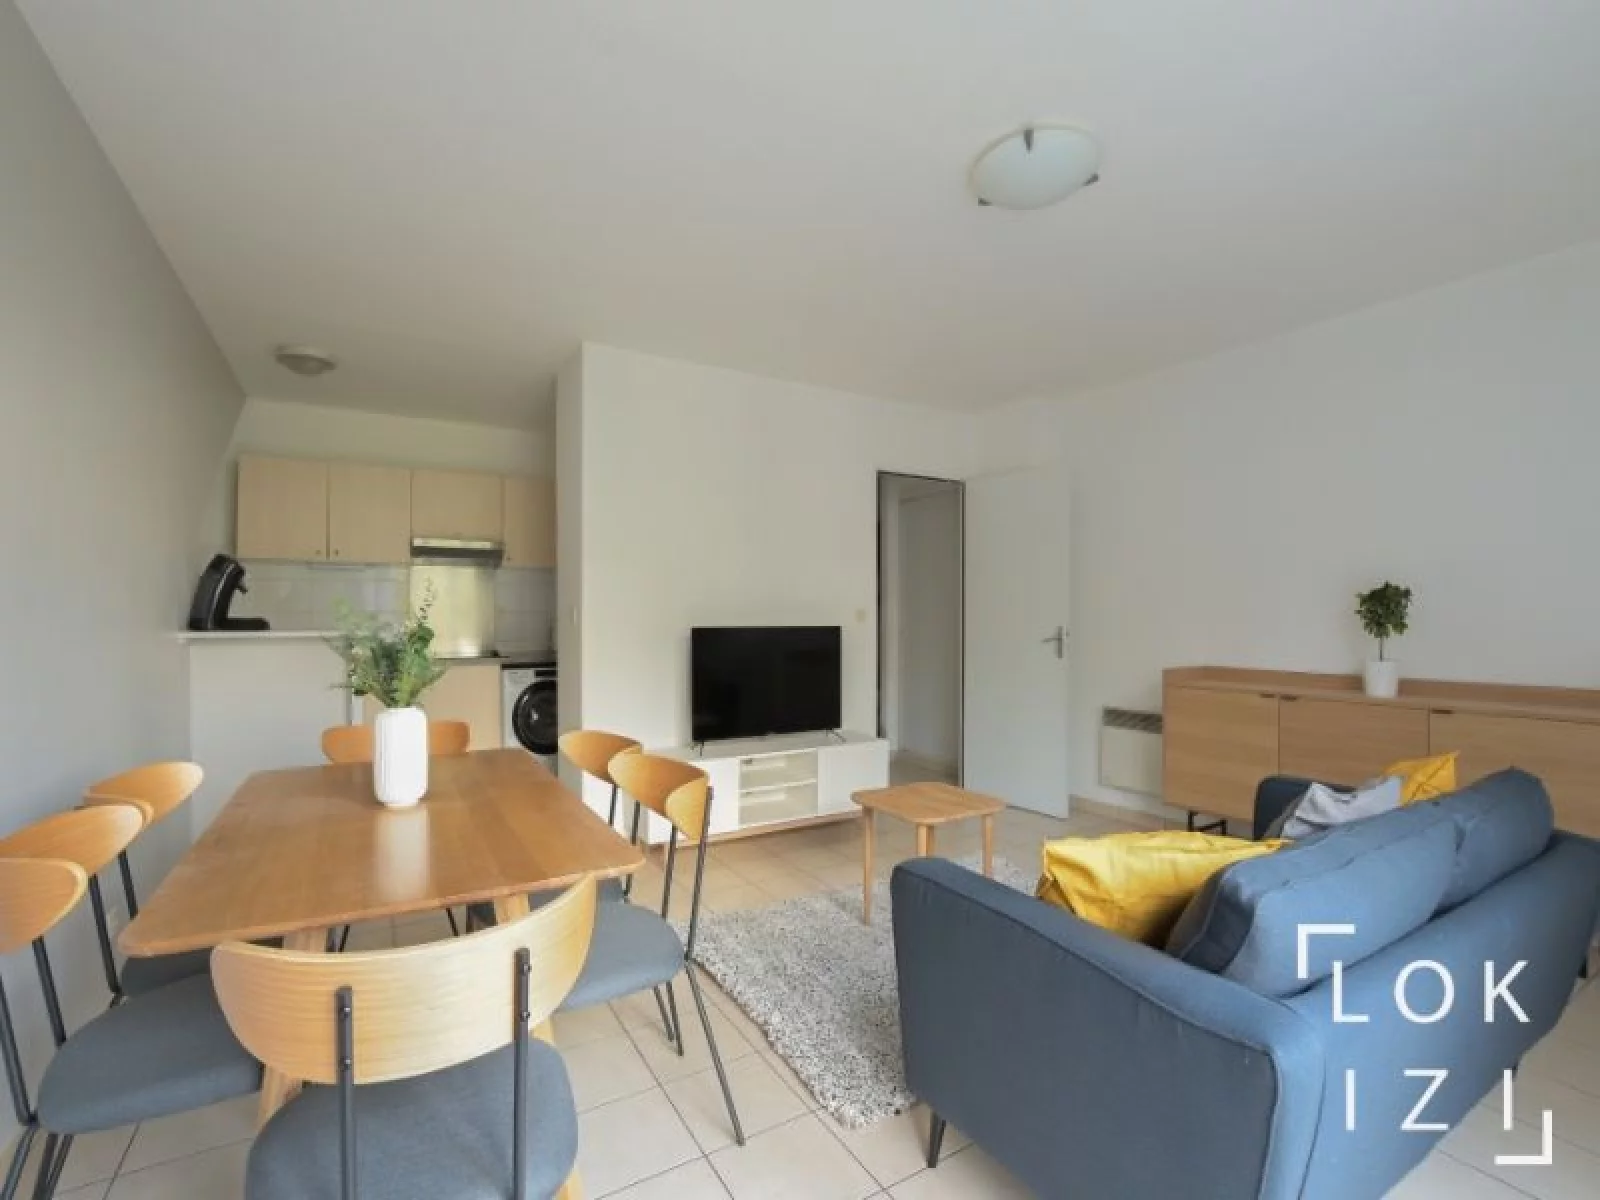 Location appartement meublé duplex 4 pièces 78m² (Paris est 94 - Bry sur Marne)